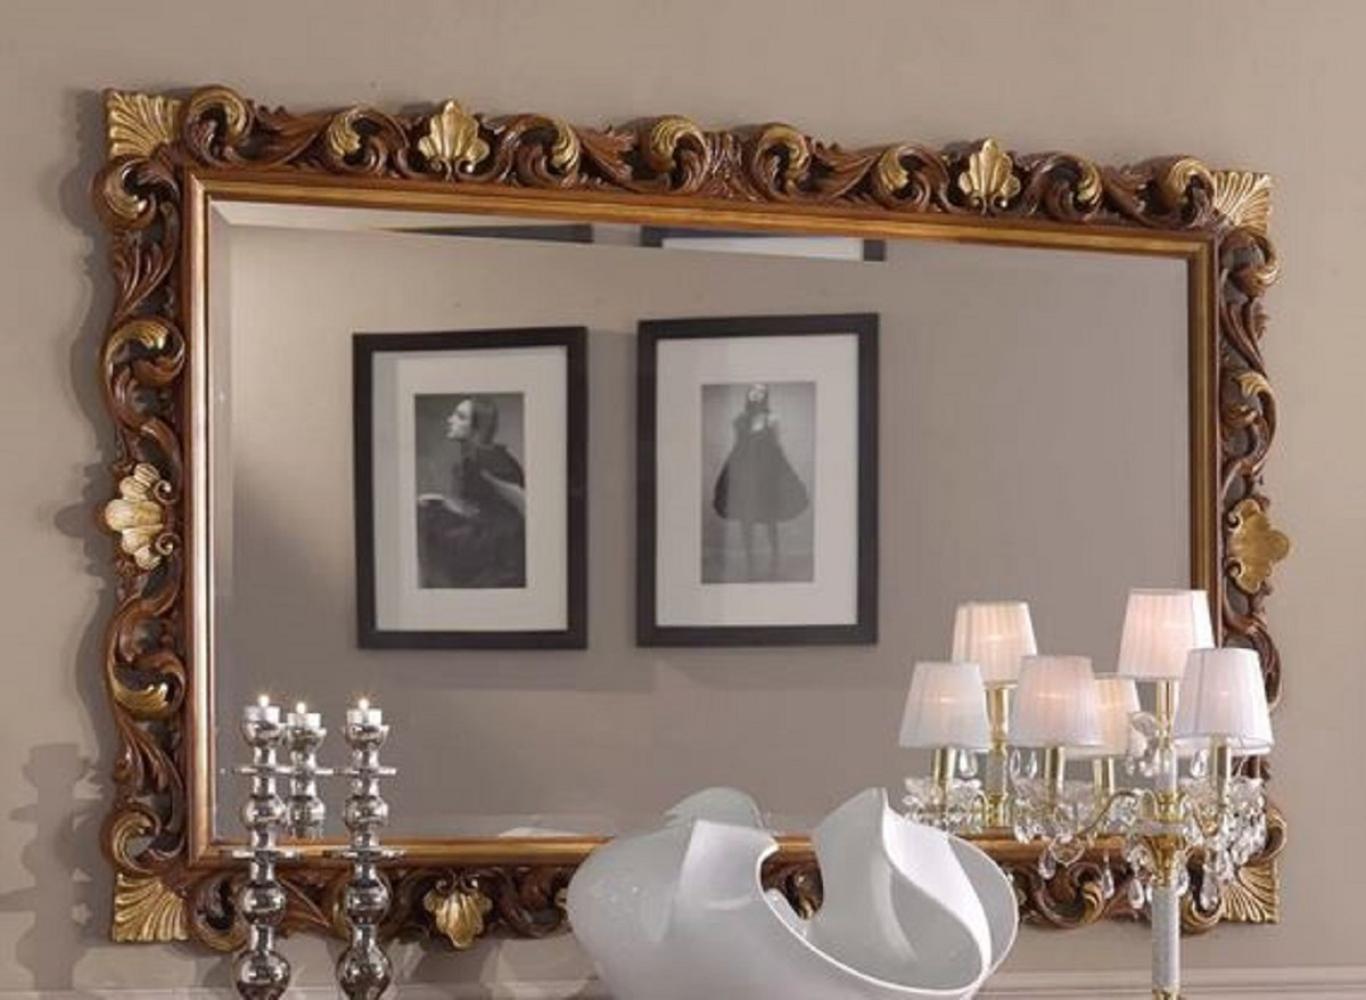 Casa Padrino Luxus Barock Spiegel Braun / Gold - Rechteckiger Wandspiegel im Barockstil - Prunkvolle Barock Möbel - Luxus Qualität - Made in Italy Bild 1